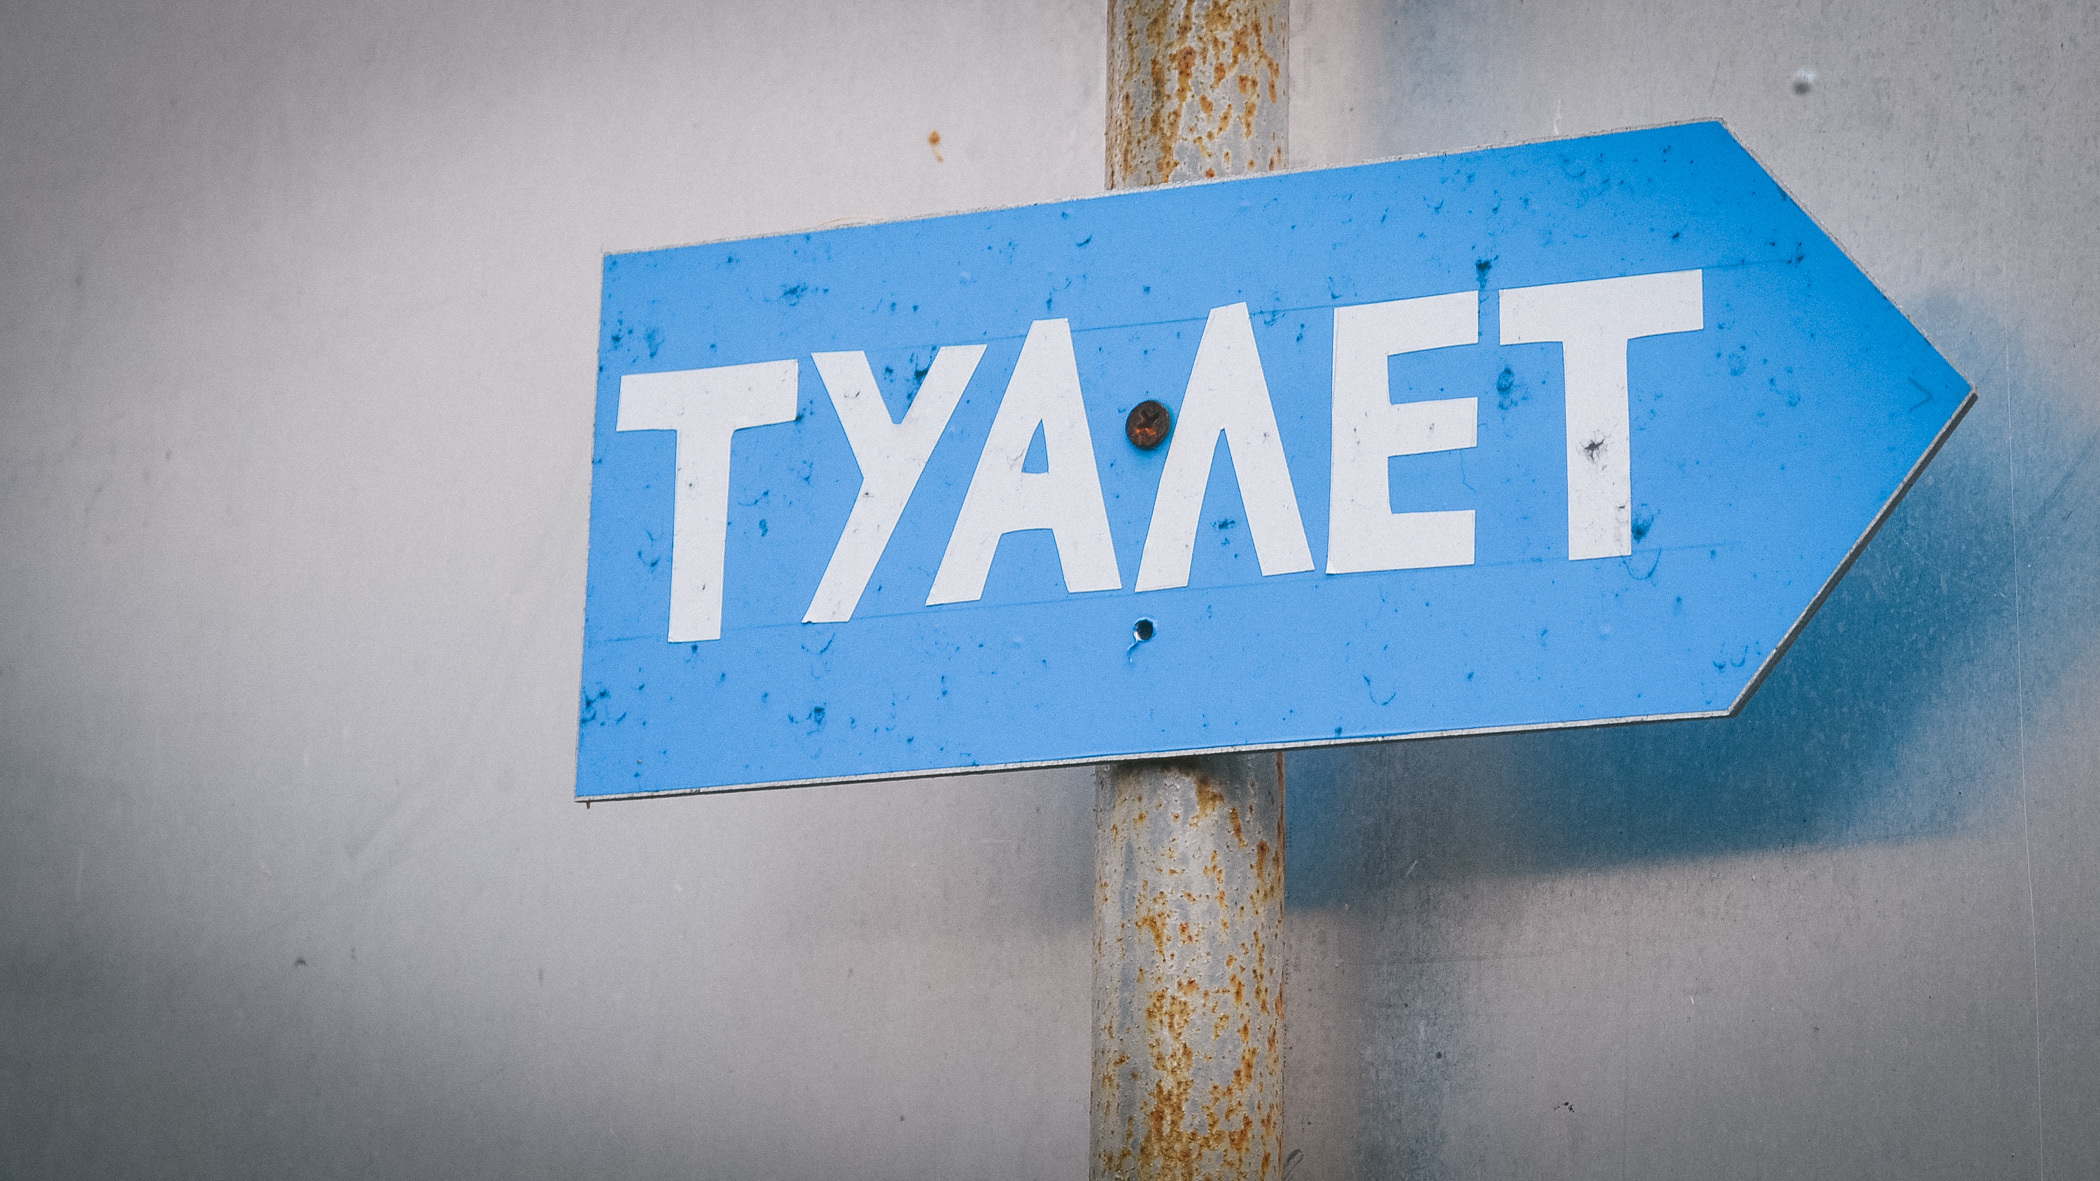 Названа стоимость общественных туалетов в Новосибирске - от 30 до 50 рублей